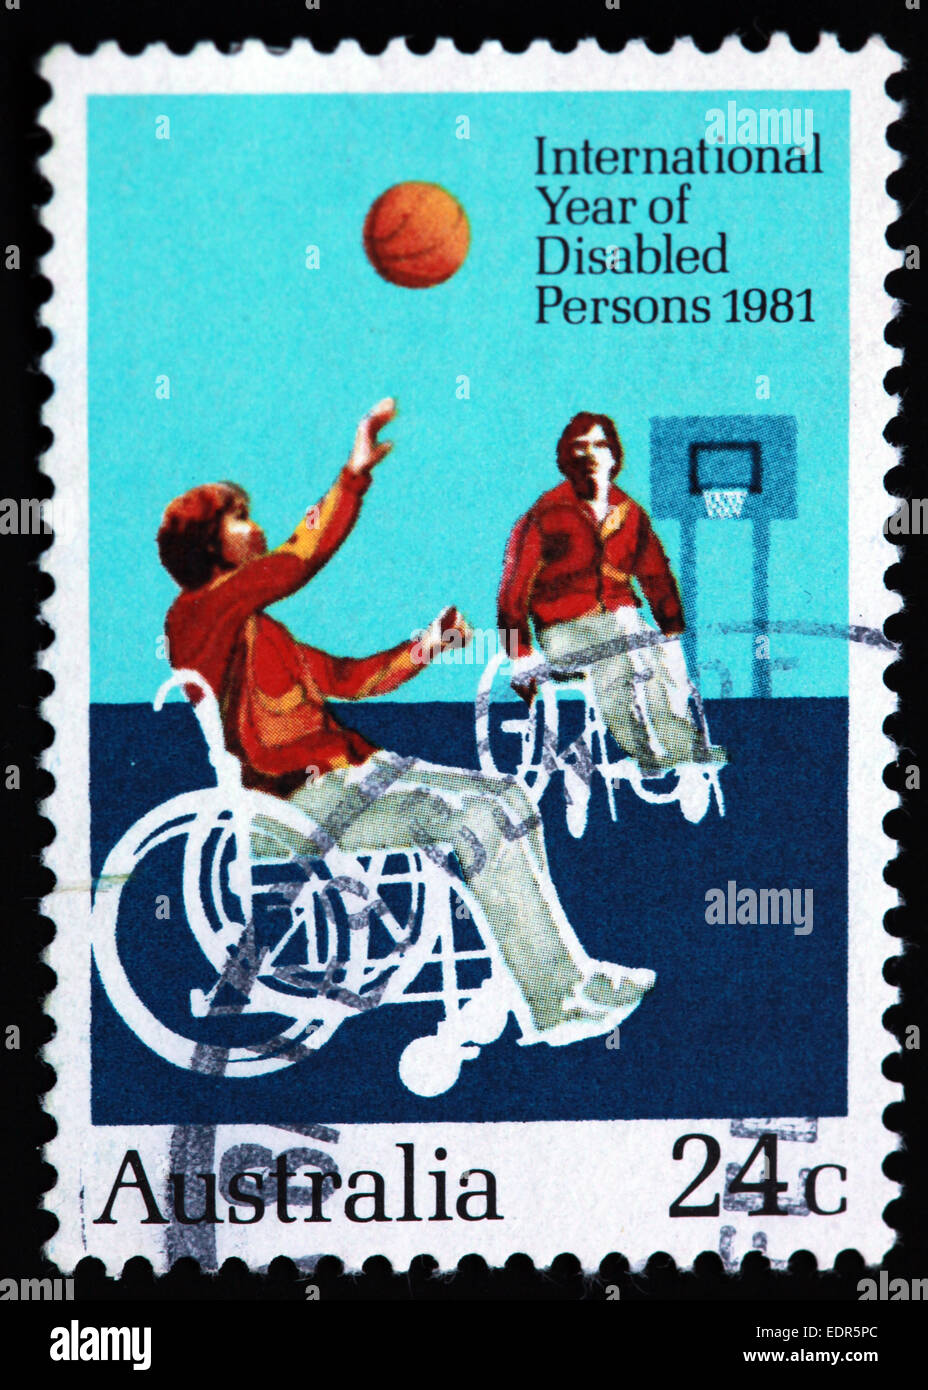 Utilisé et oblitérée Australie / Austrailian Stamp 24c 1981 Année internationale des personnes handicapées, le basket-ball en fauteuil roulant Banque D'Images